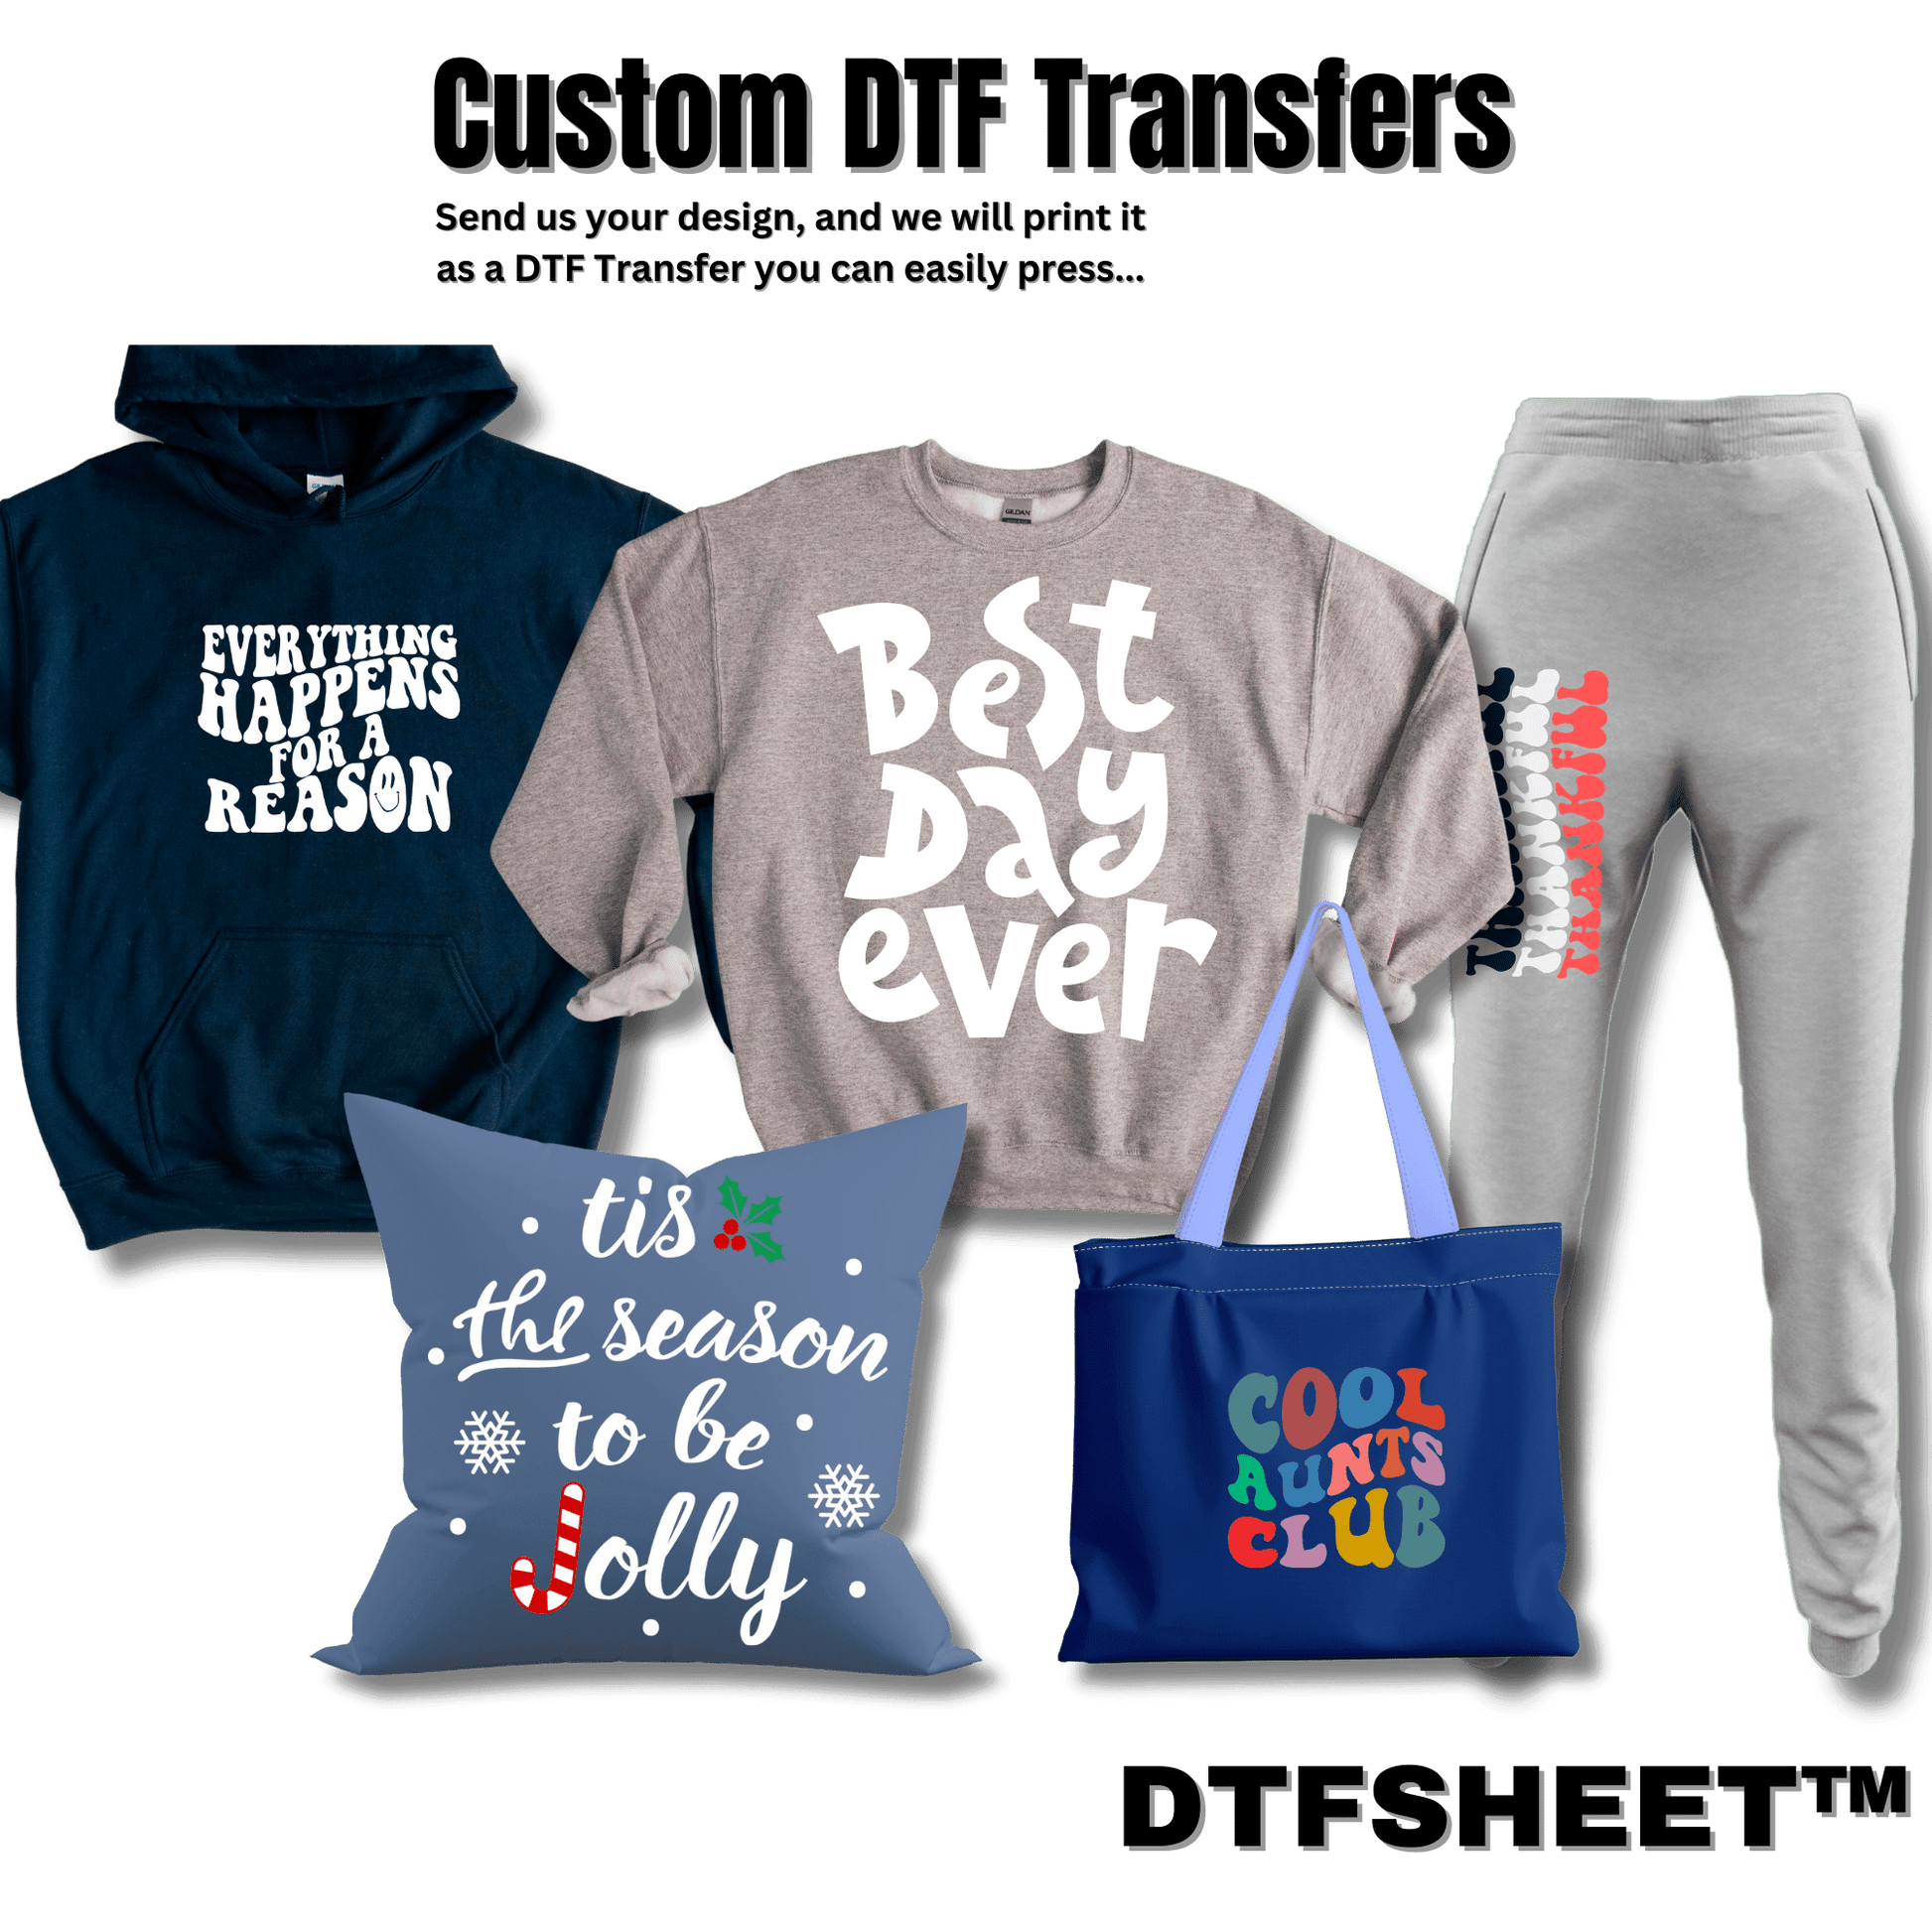 Custom Image to DTFSheet™ Transfer - DTFSheet.com